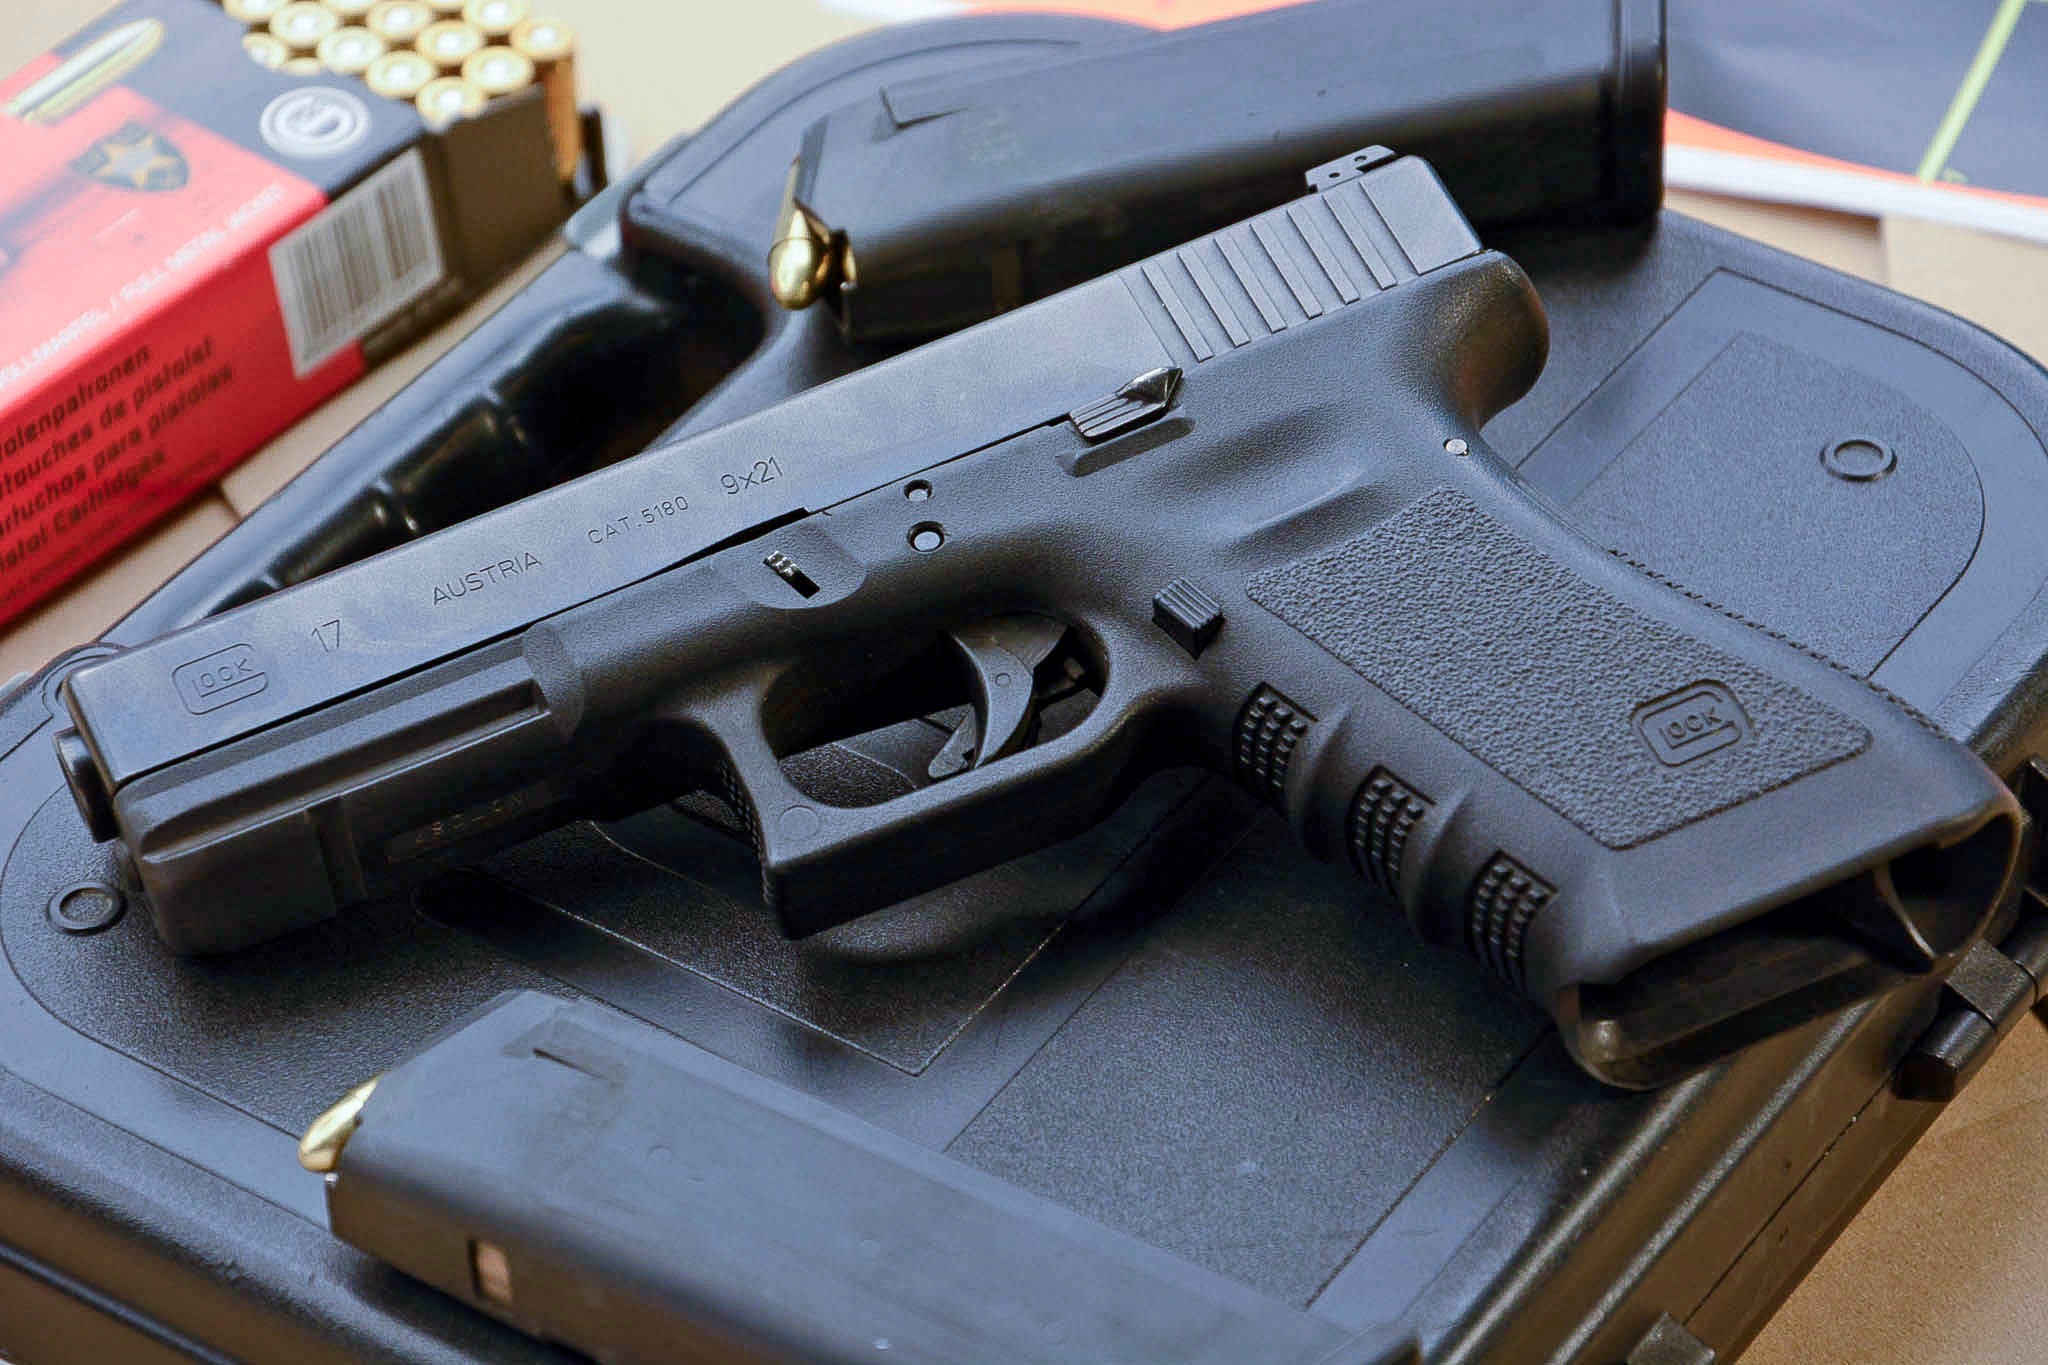 Закупка дня: пистолеты Glock-17 для судебных приставов